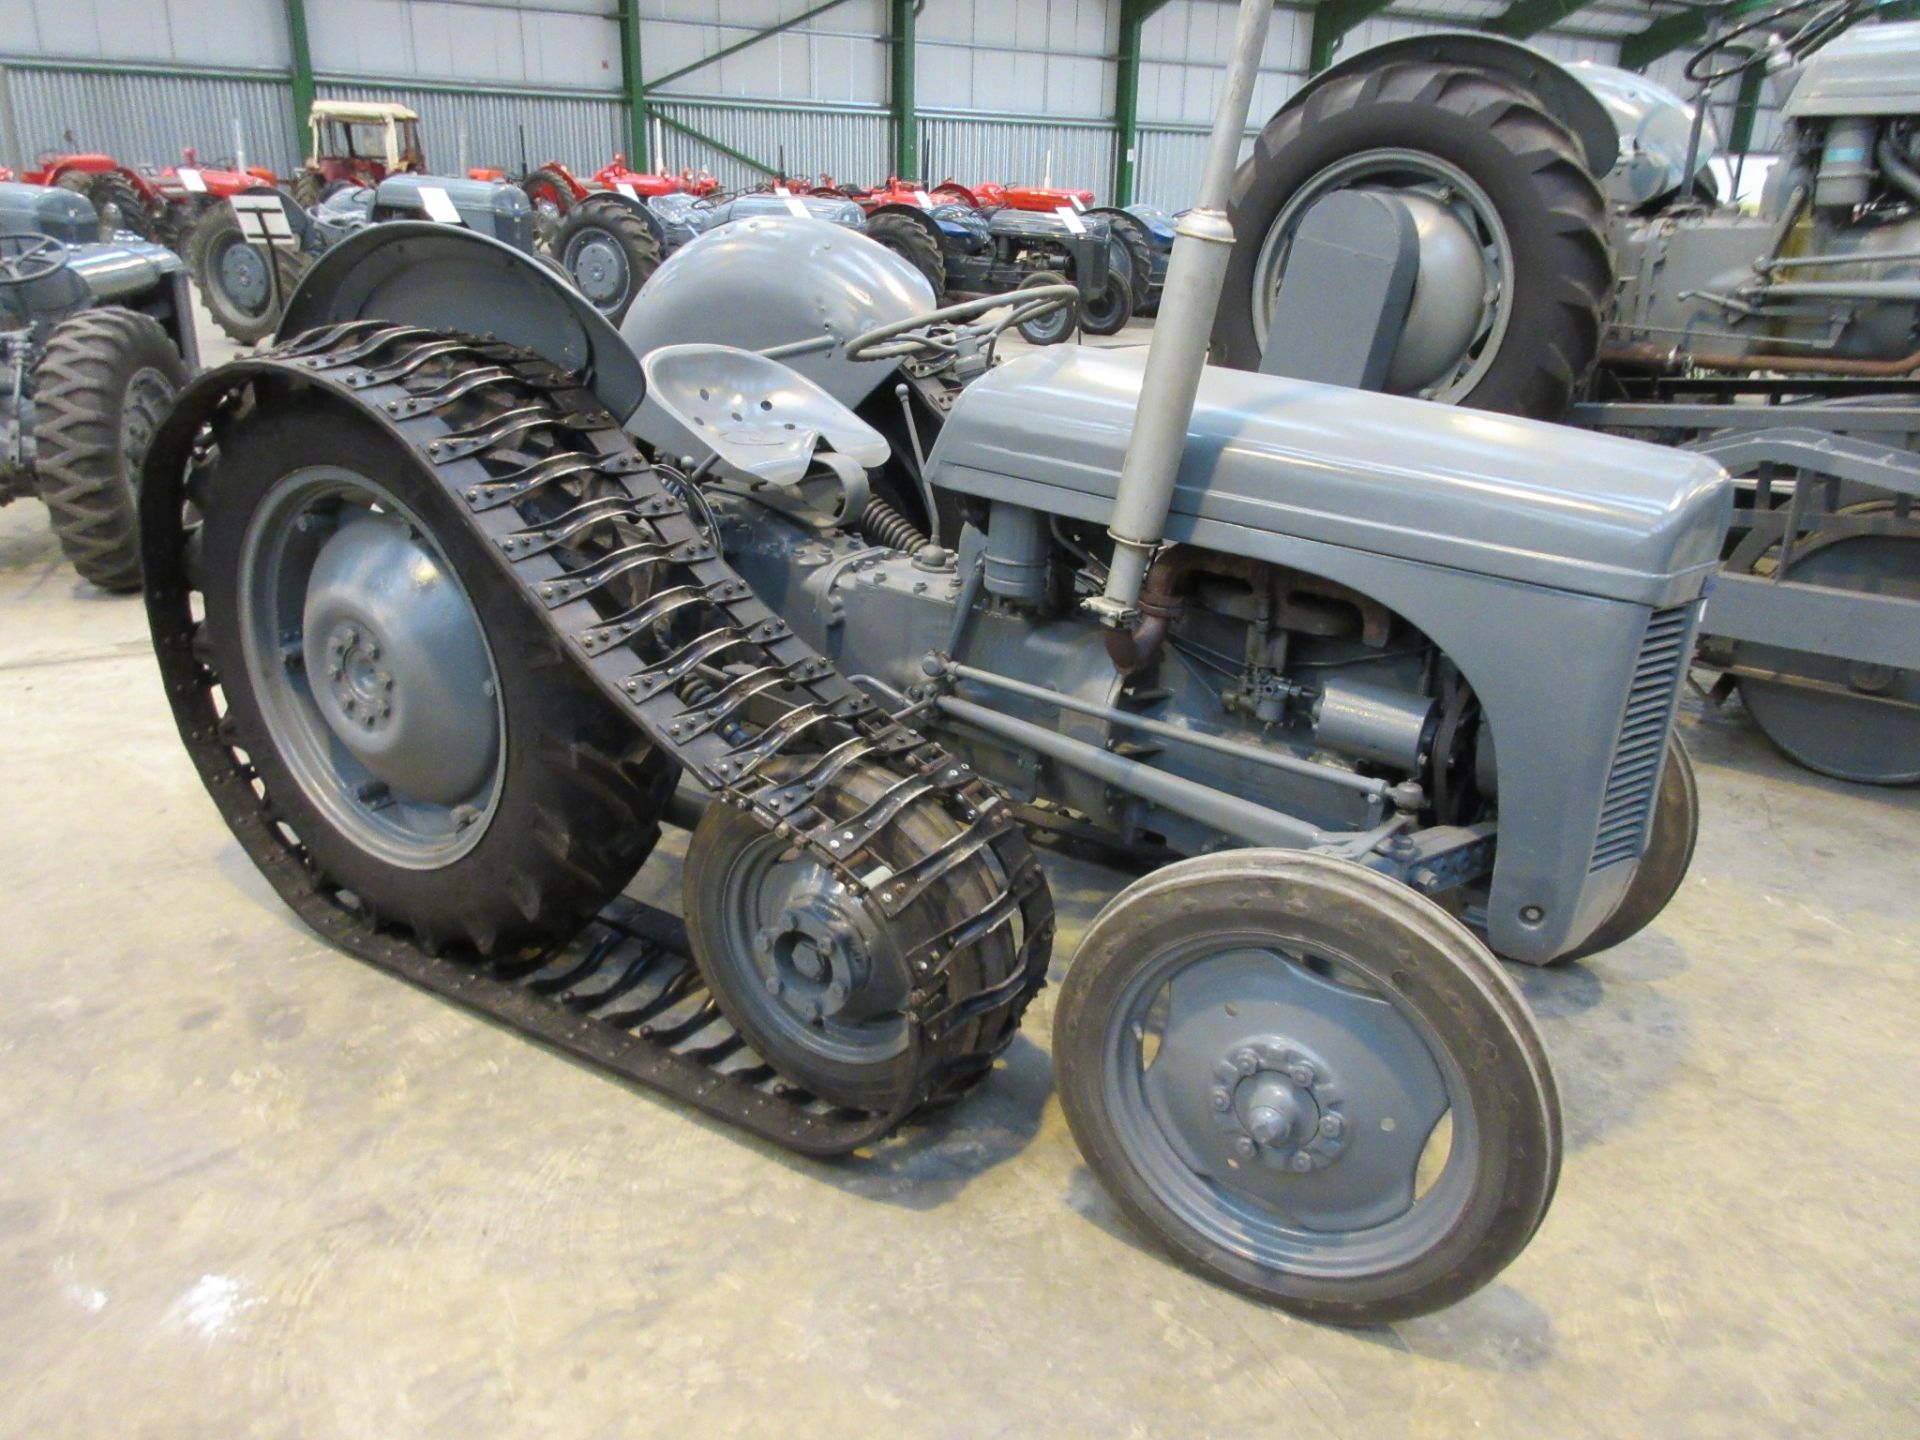 1949 FERGUSON TE-A20 'Half Track' 4cylinder petrol TRACTOR Reg No: 467 XUA Serial No: TEA85362 The